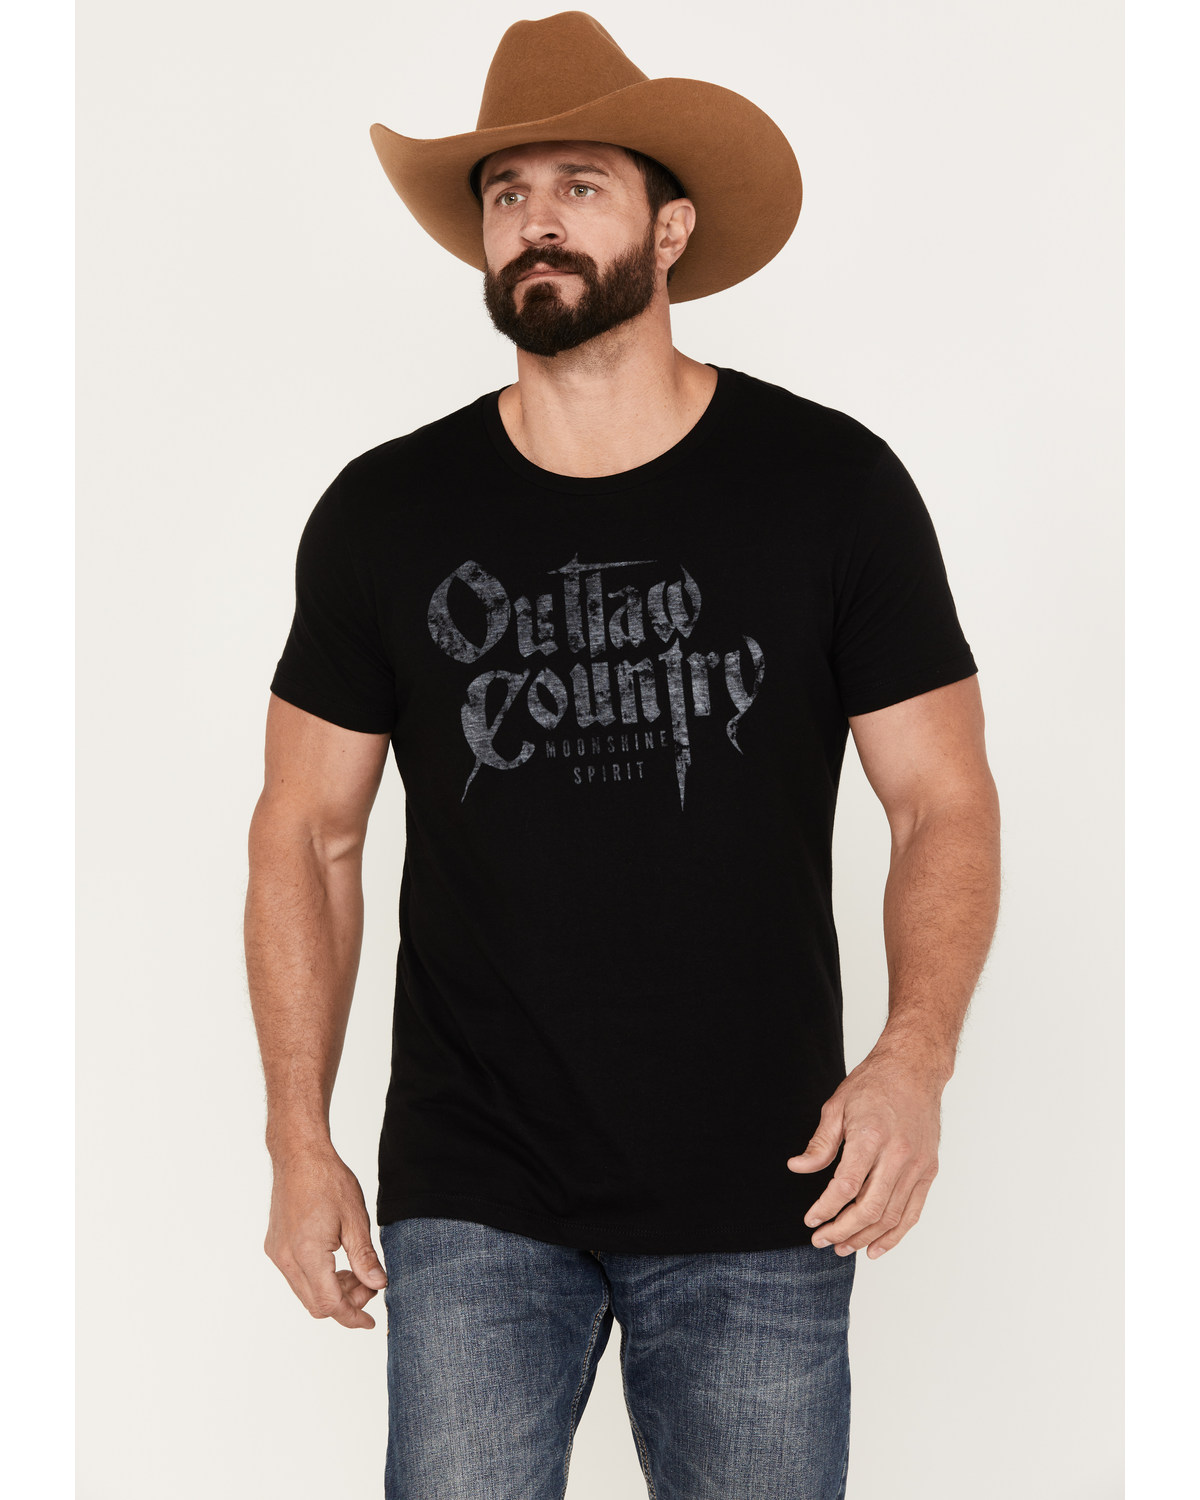 Moonshine Spirit Men's Outlaw Short Sleeve Graphic T-Shirt